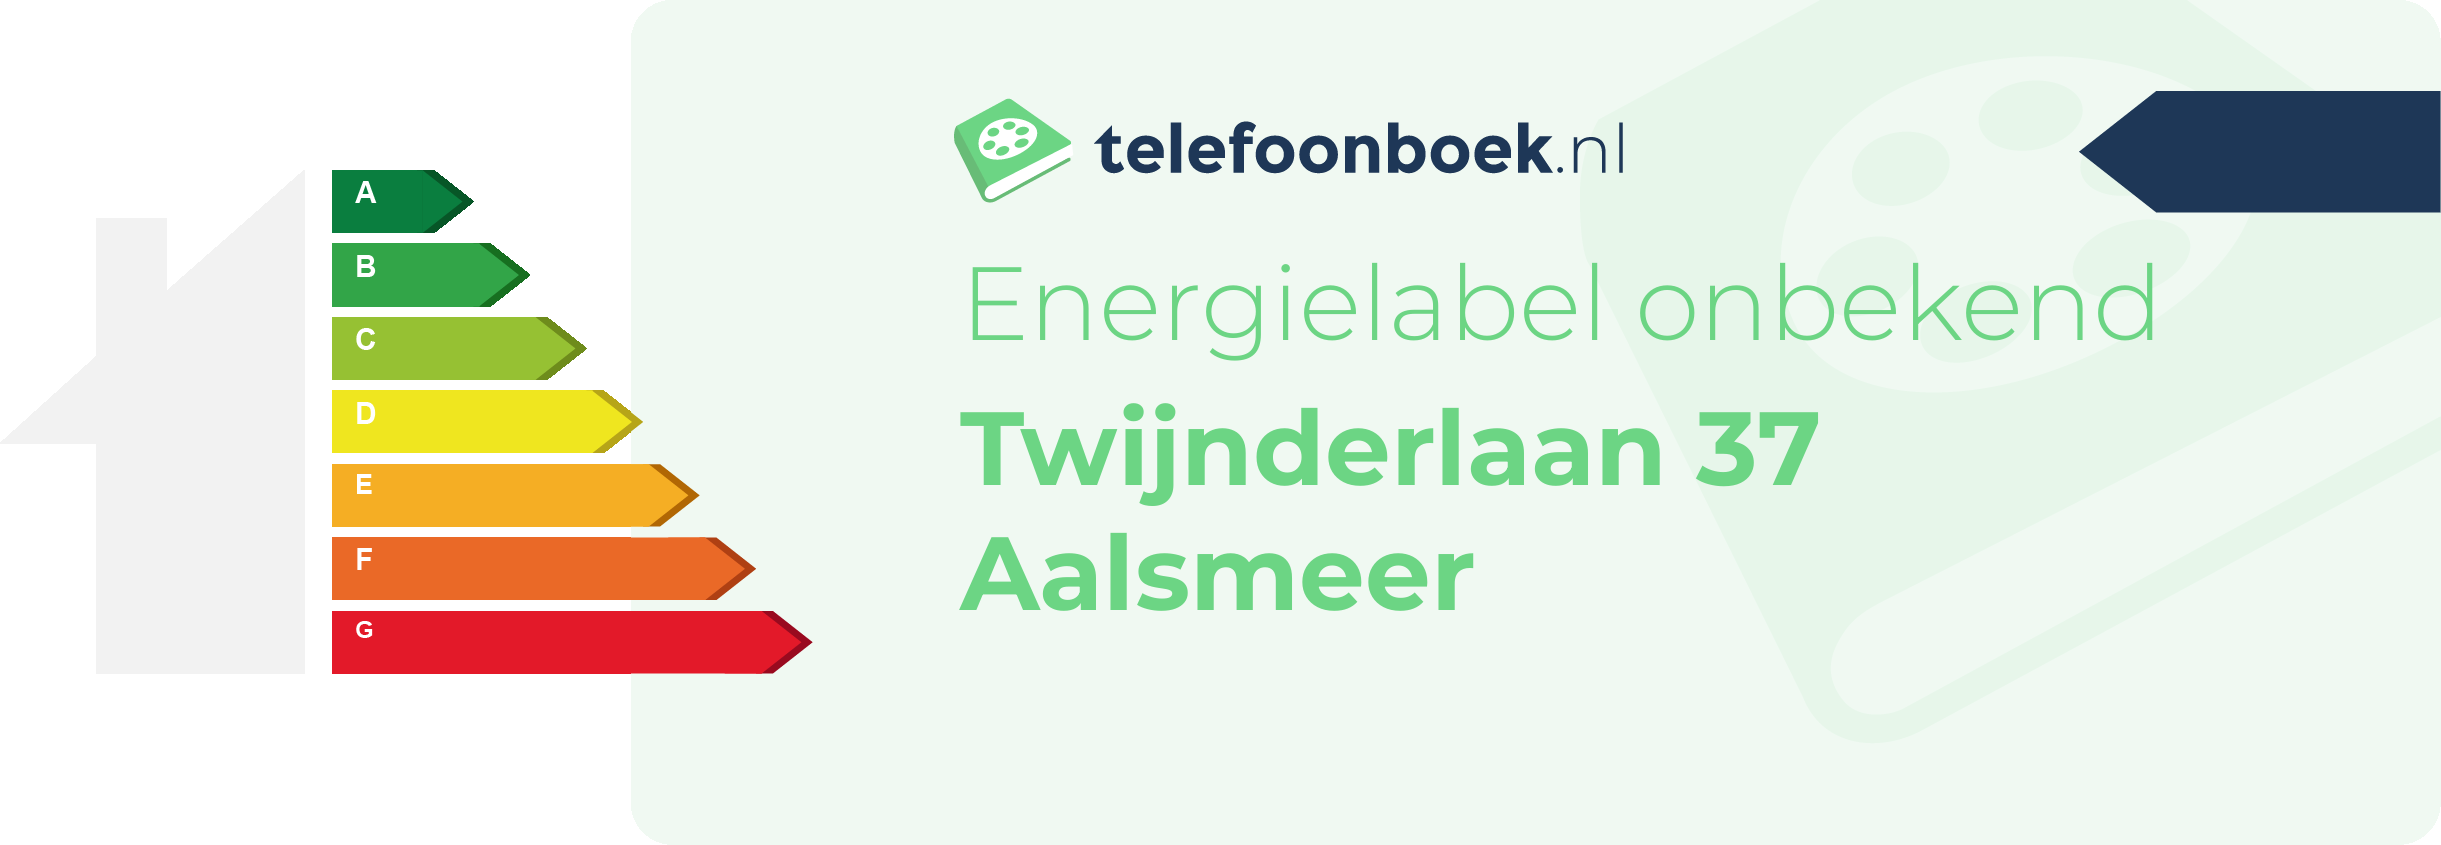 Energielabel Twijnderlaan 37 Aalsmeer